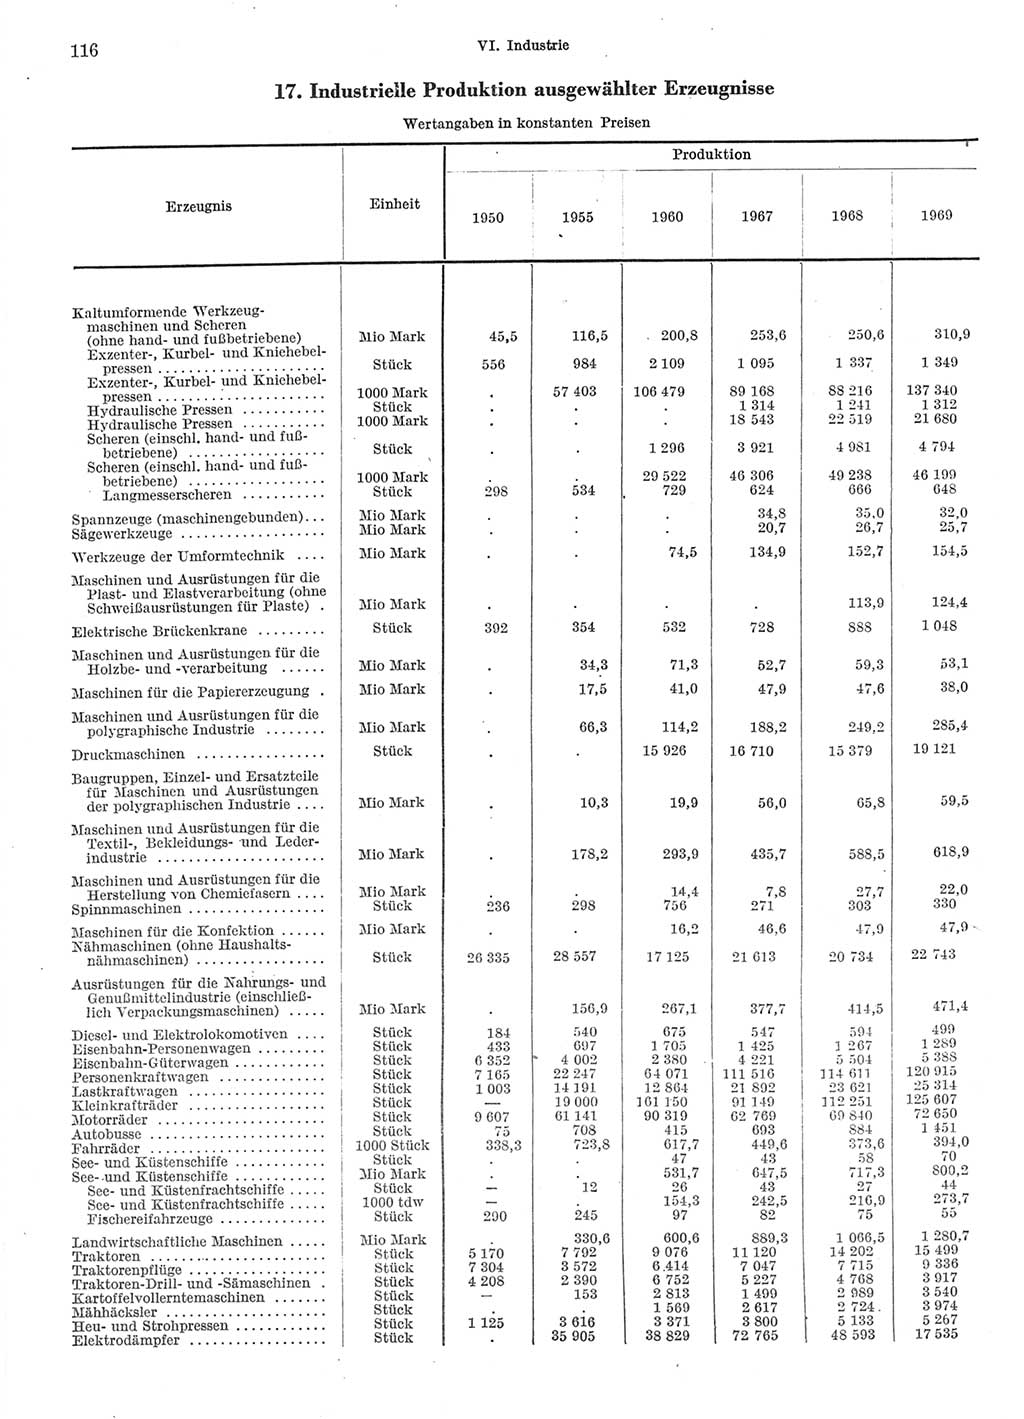 Statistisches Jahrbuch der Deutschen Demokratischen Republik (DDR) 1970, Seite 116 (Stat. Jb. DDR 1970, S. 116)